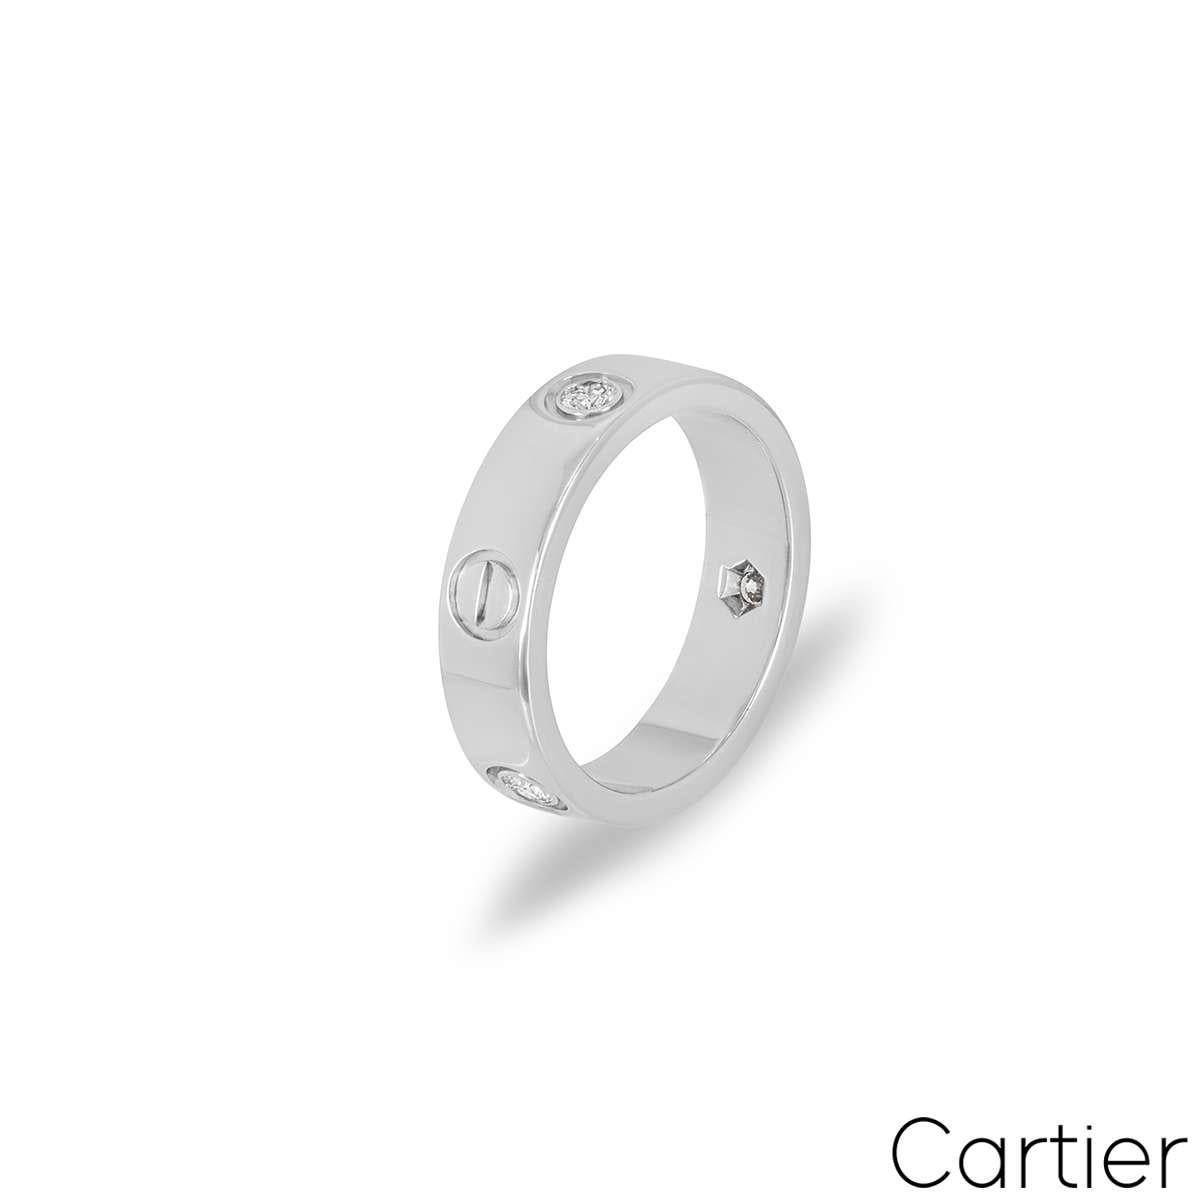 Bague signature en or blanc 18 carats de la collection Love de Cartier. Sertie de 3 diamants ronds de taille brillant d'une valeur totale de 0,22 ct, alternant avec les motifs iconiques de la vis de Cartier. D'une largeur de 5,5 mm, la bague